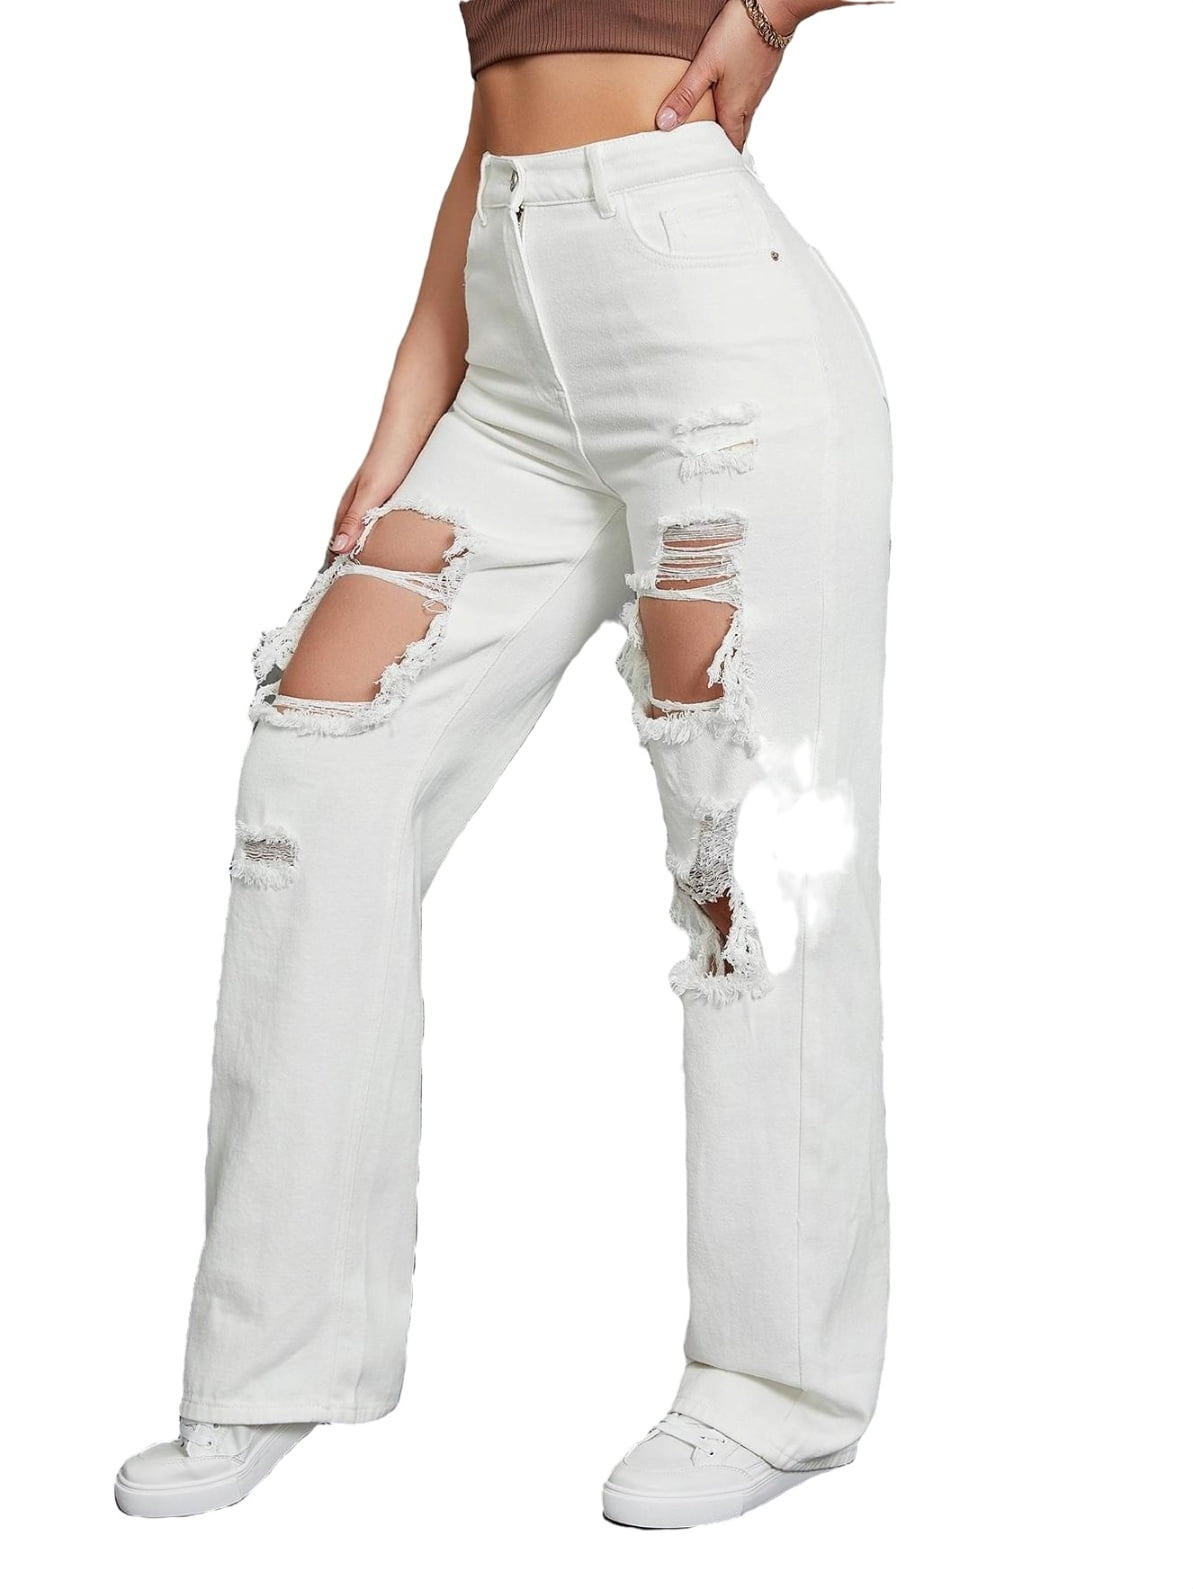 Gurgle tilnærmelse Styre Women's High Waist Ripped Boyfriend Jeans Denim Pants White - Walmart.com